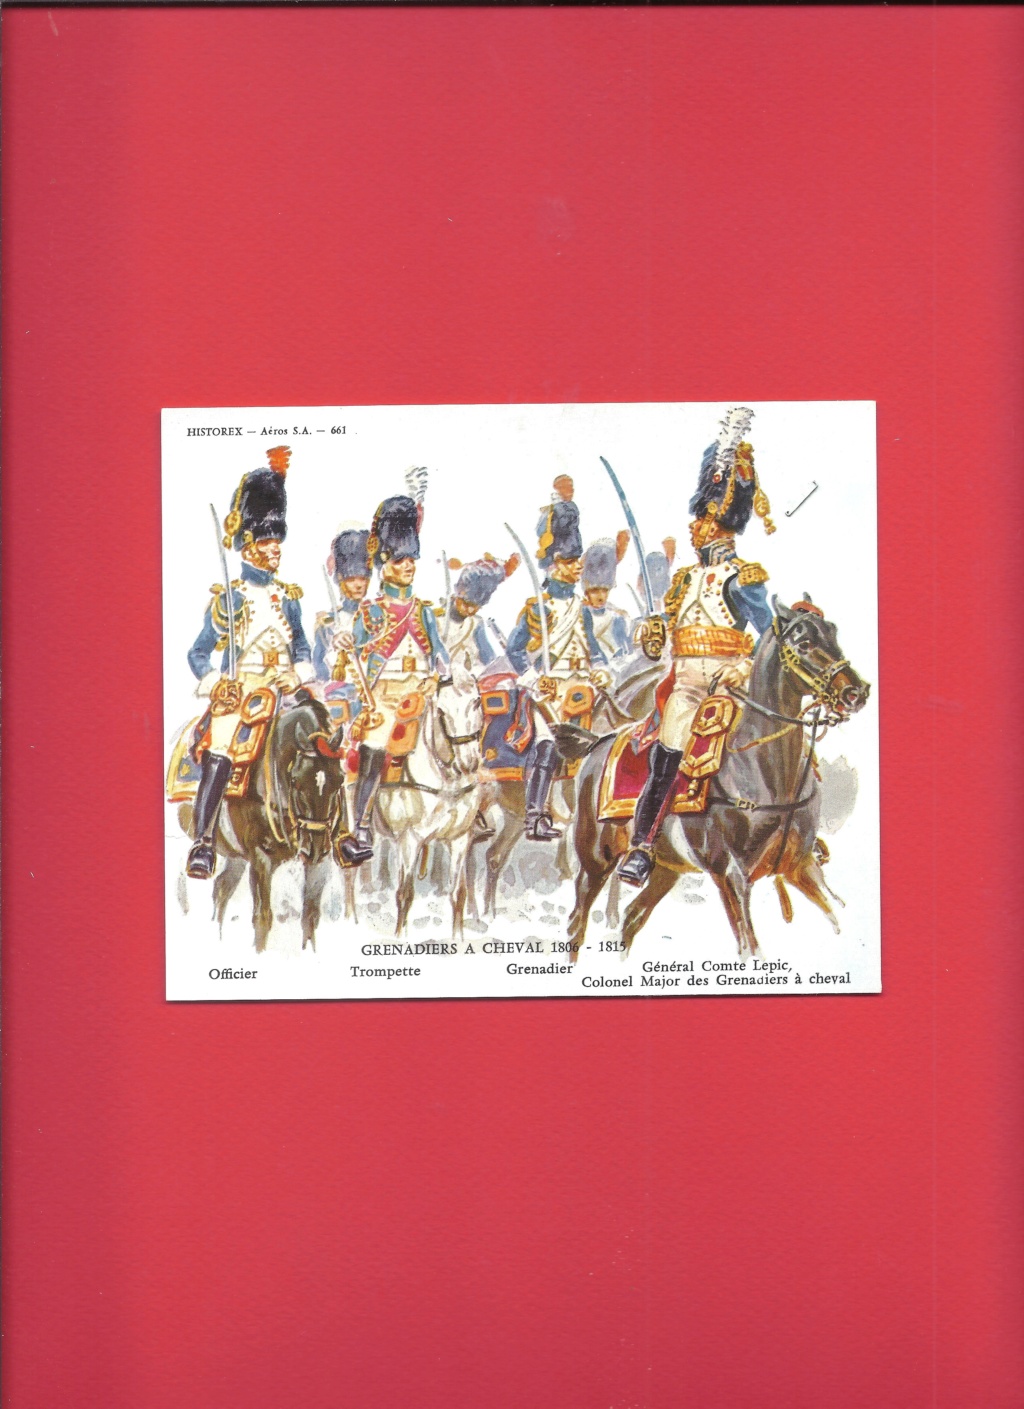 [HISTOREX] Régiment des Grenadiers à cheval de la Garde Impériale 1804 - 1815 1/30ème Réf 30013 Histo204